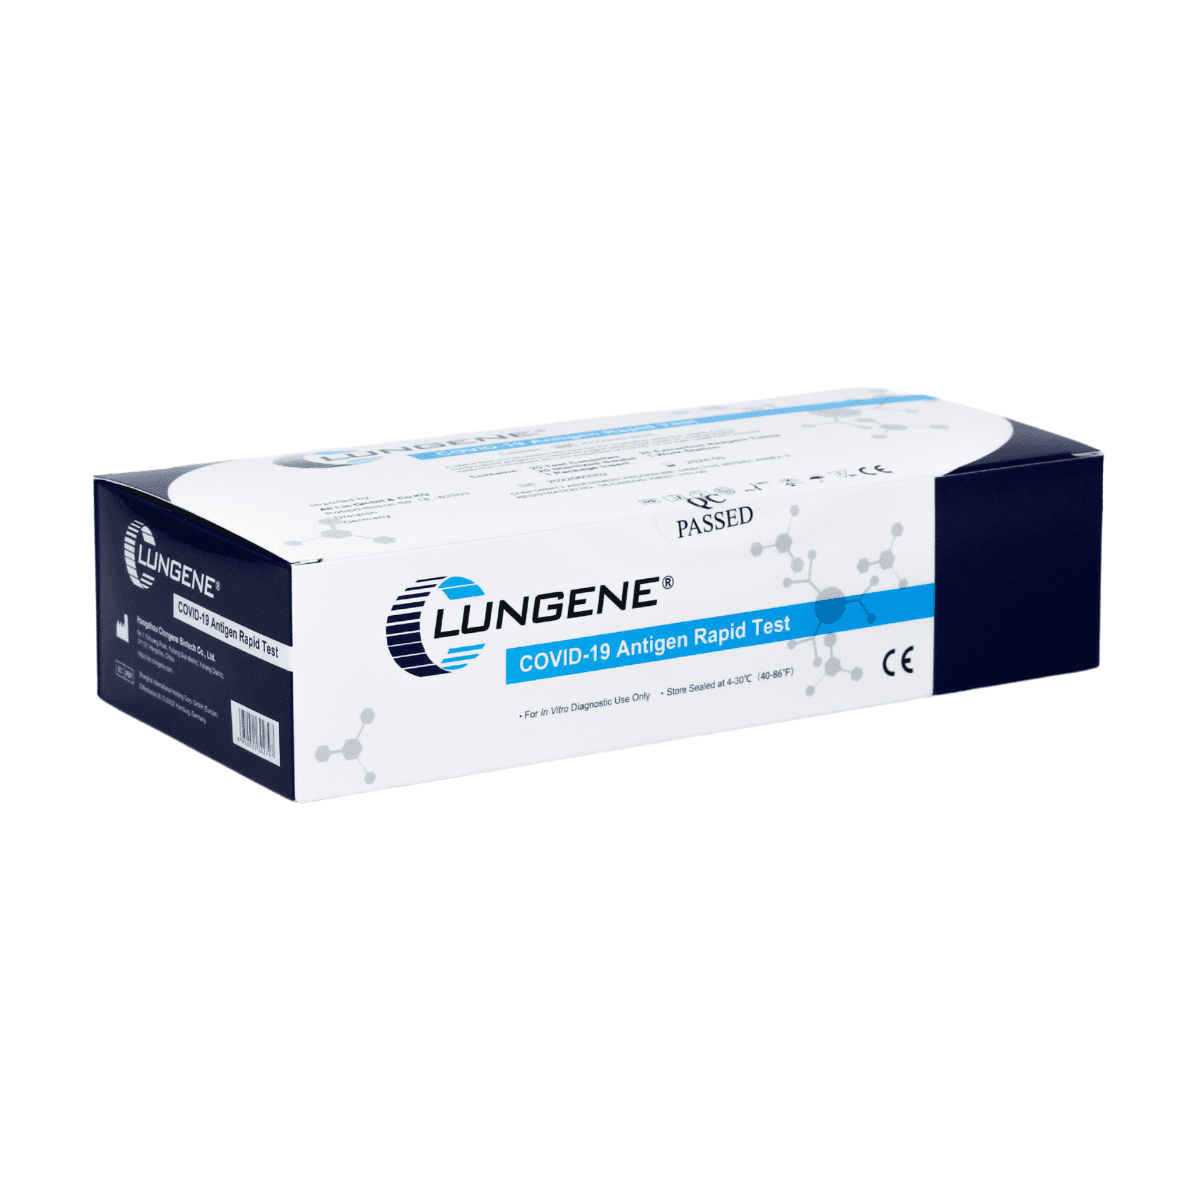 Eine versiegelte Schachtel mit dem Clungene Antigen Schnelltest 25 Stück AT079/20, überwiegend weiß mit blauen Akzenten, mit Zertifizierungs- und Verwendungsinformationen.